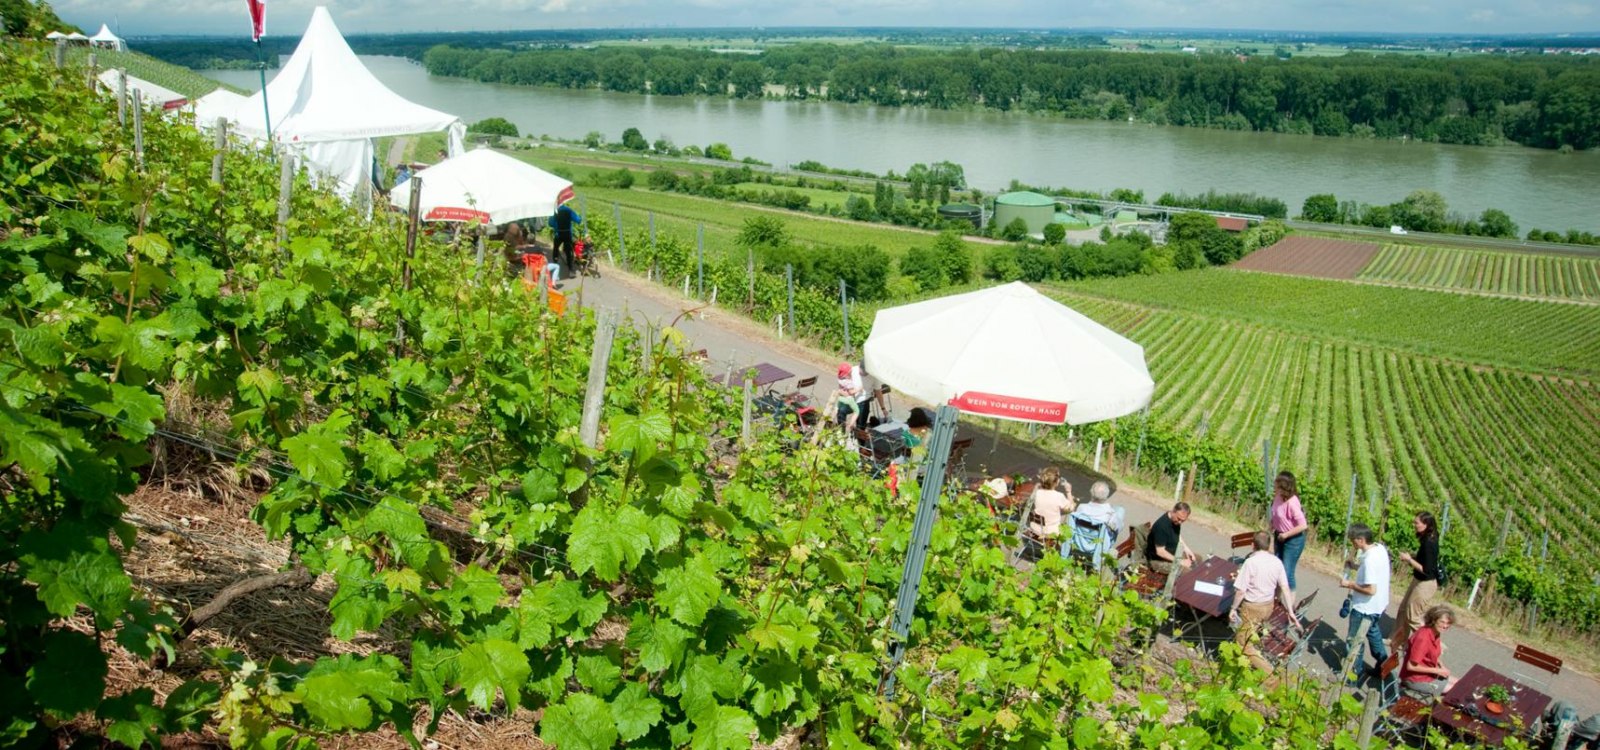 3475-wijnpresentatie-op-de-rode-piste-ullrich-schaars-rheinhessenwein-ev, © Ullrich Knapp / Rheinhessenwein eV